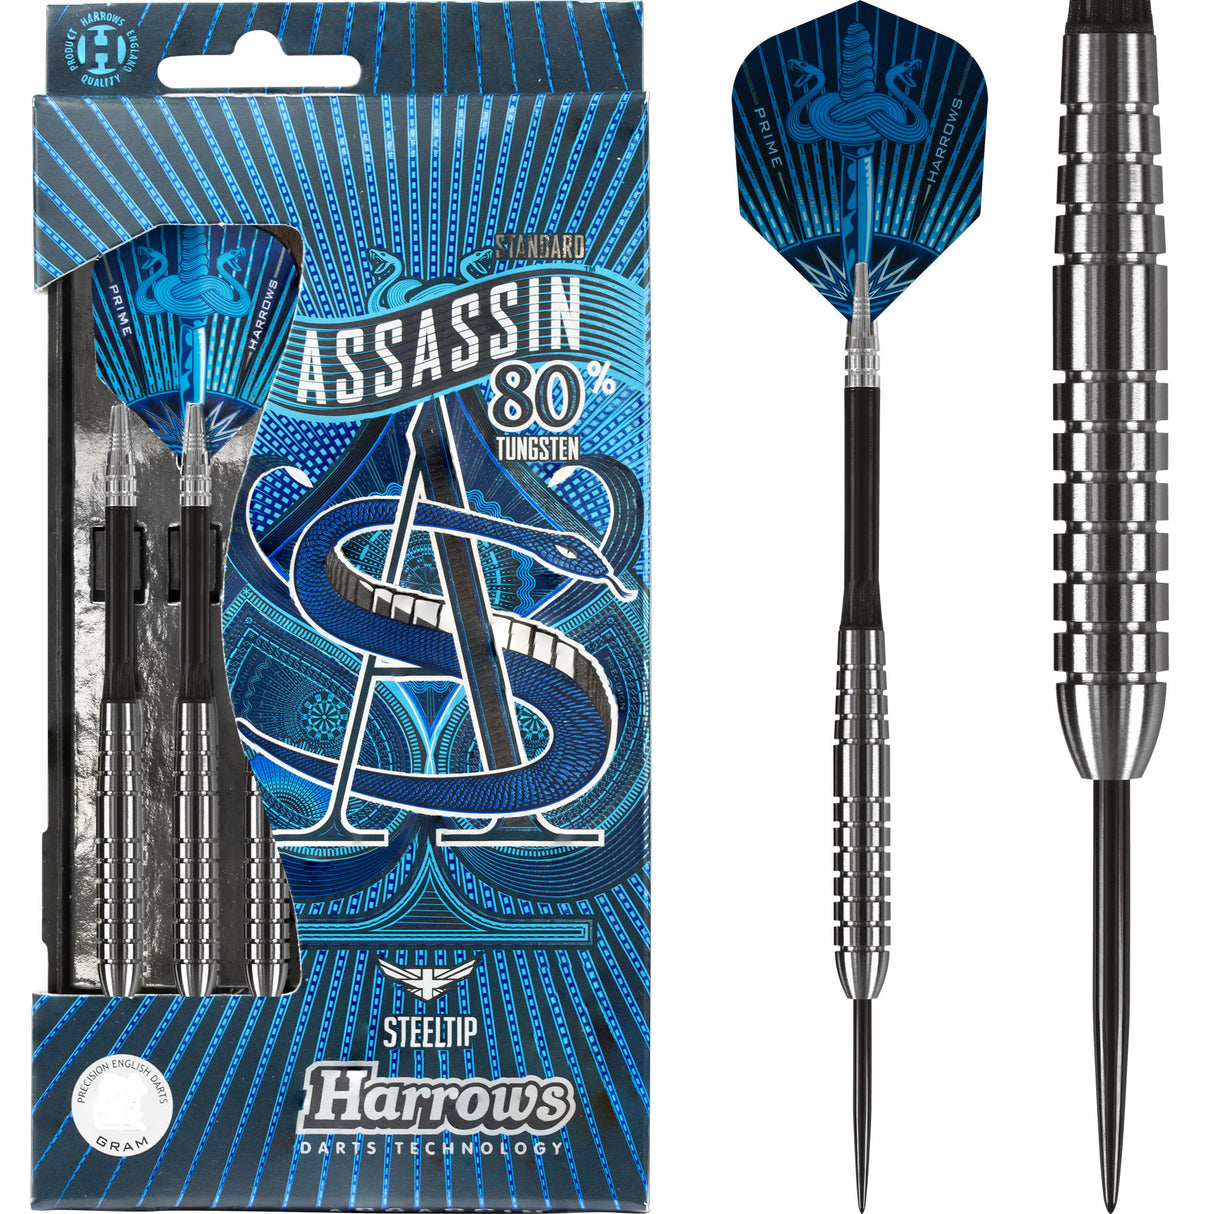 Harrows Assassin Darts - Steel Tip - Std - Ringed - 24g